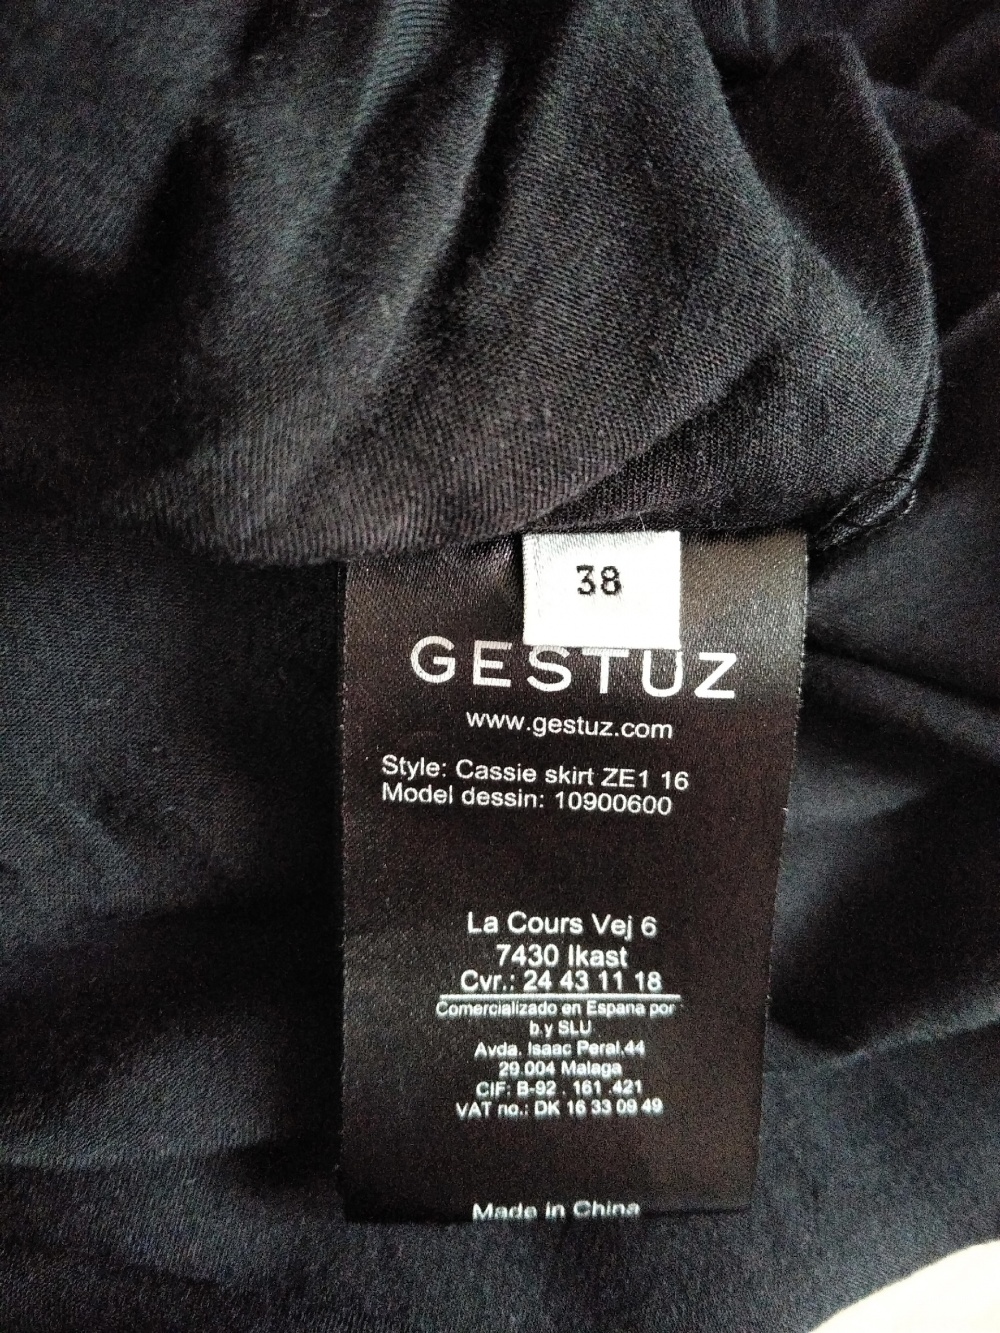 Юбка из 100% шелка Gestuz (размер: EUR38 - на 44-46).